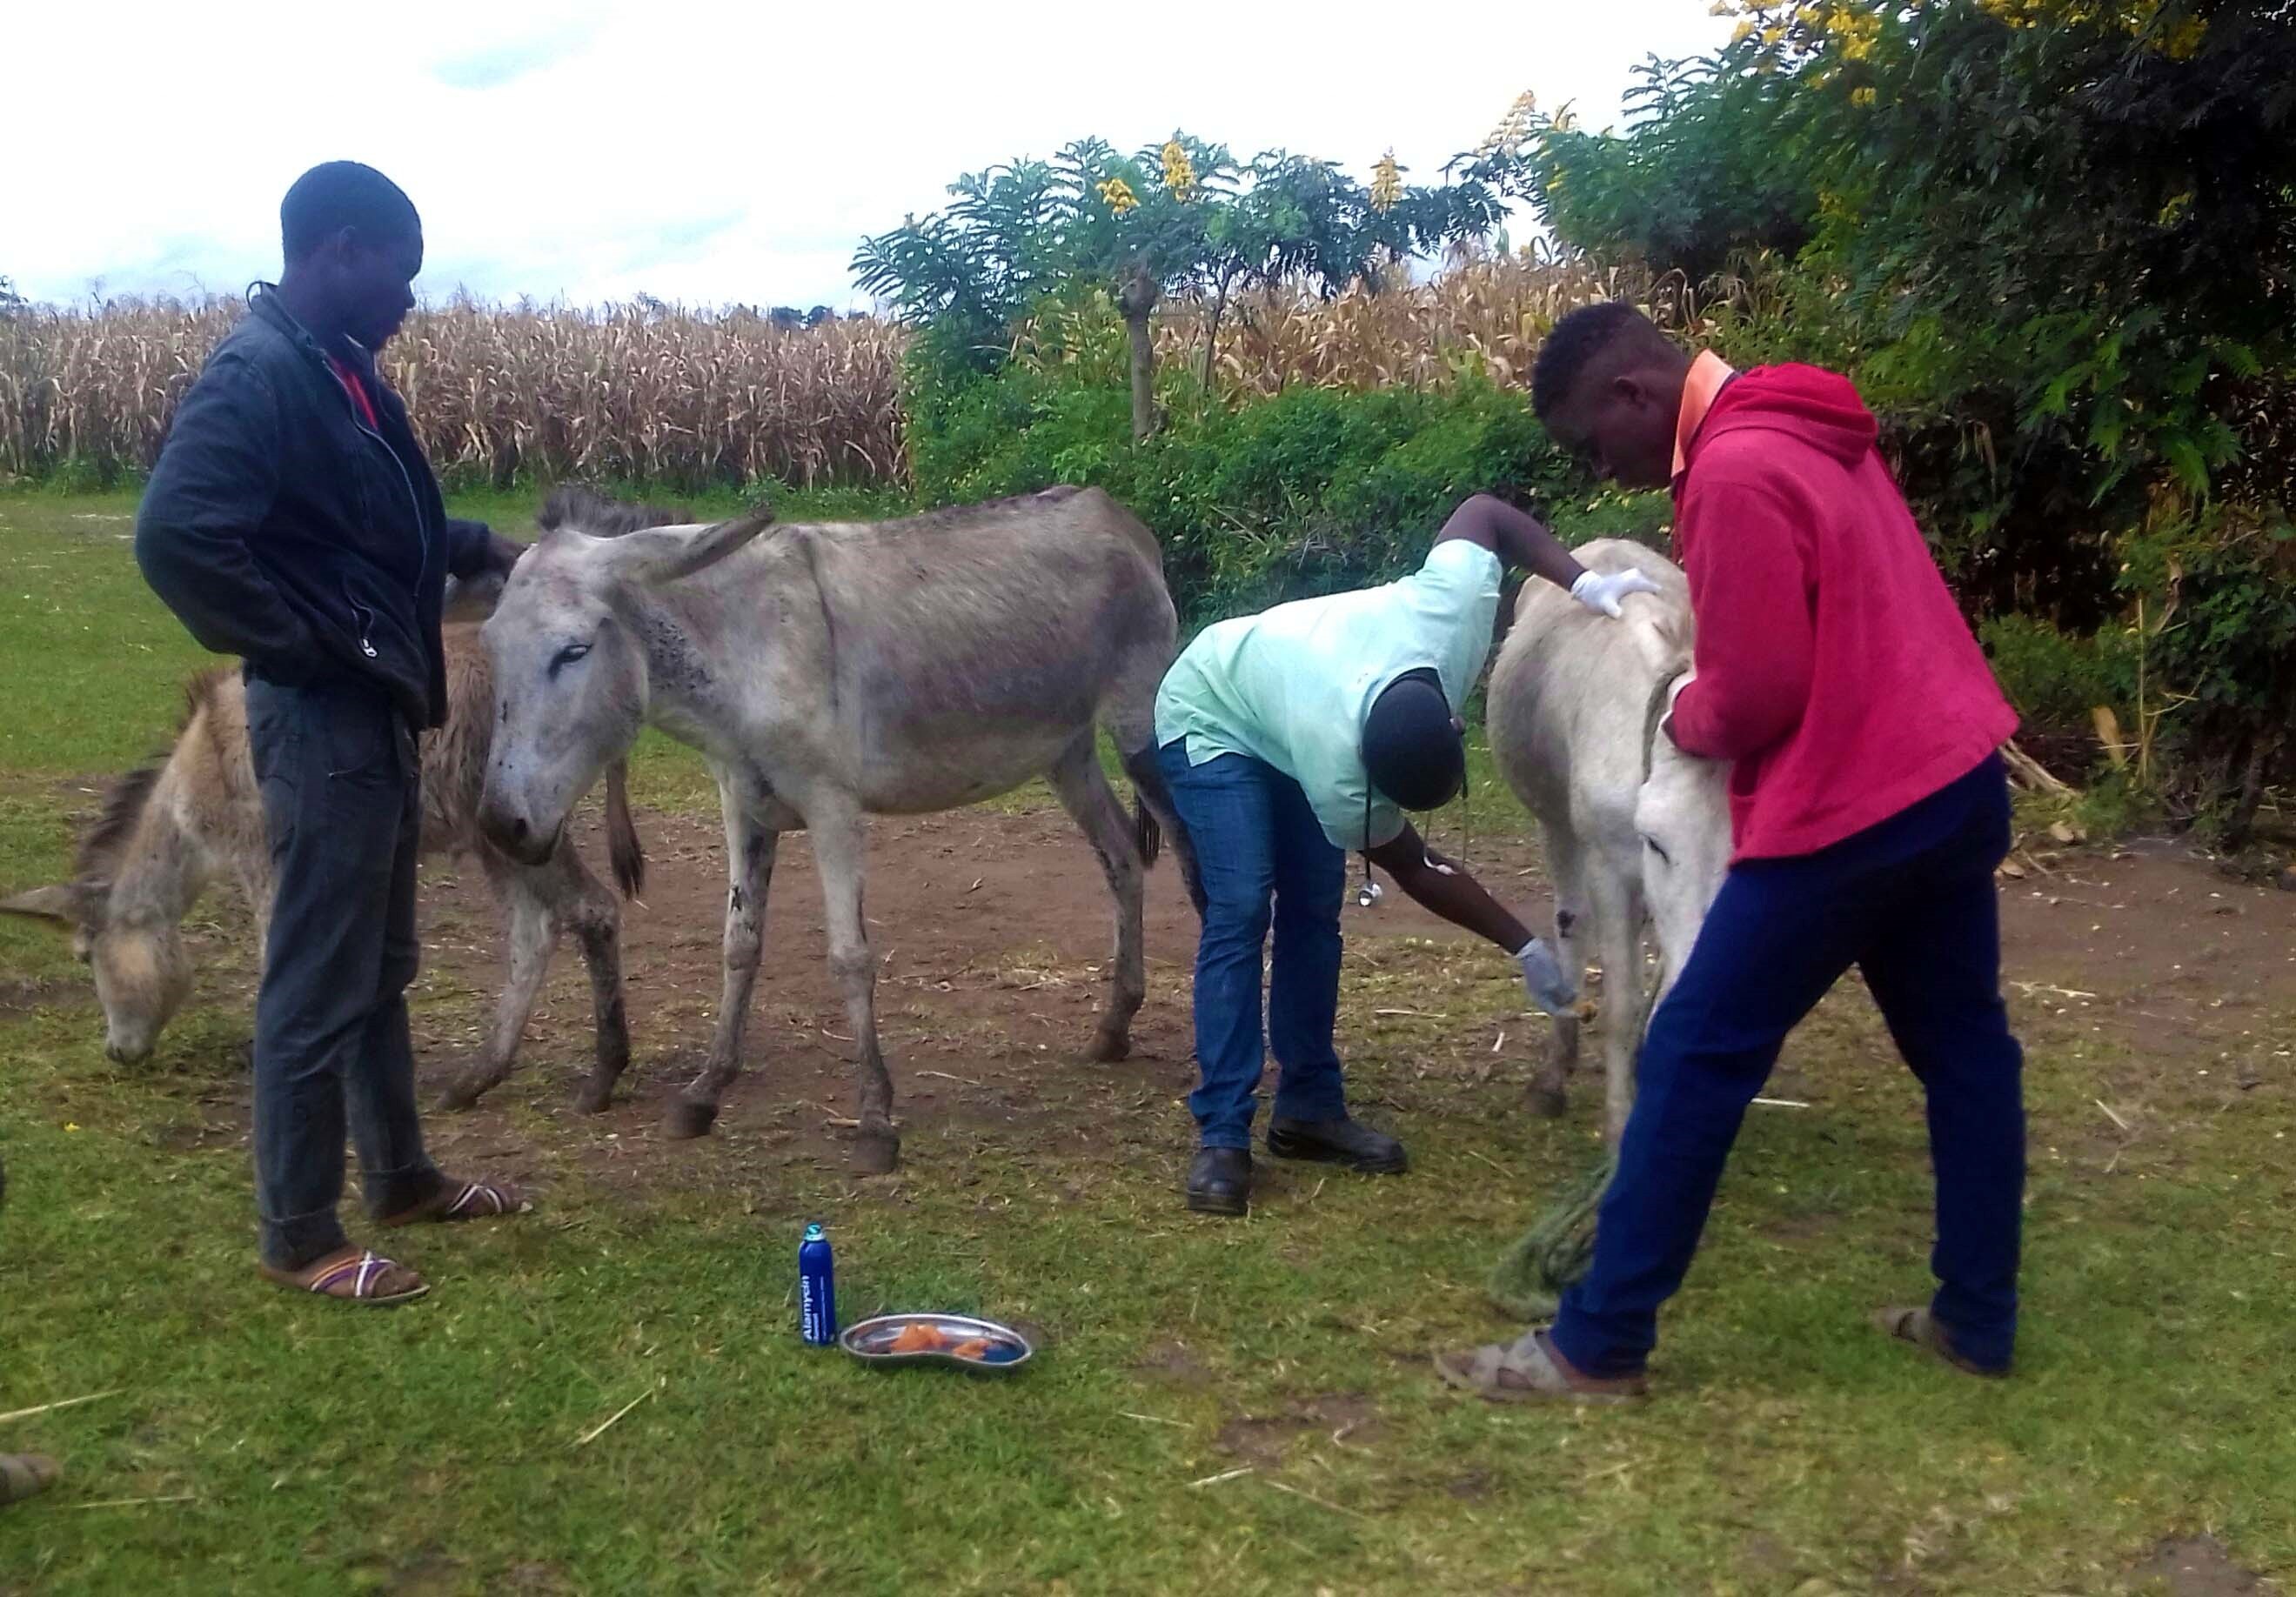 Precious treating a donkey